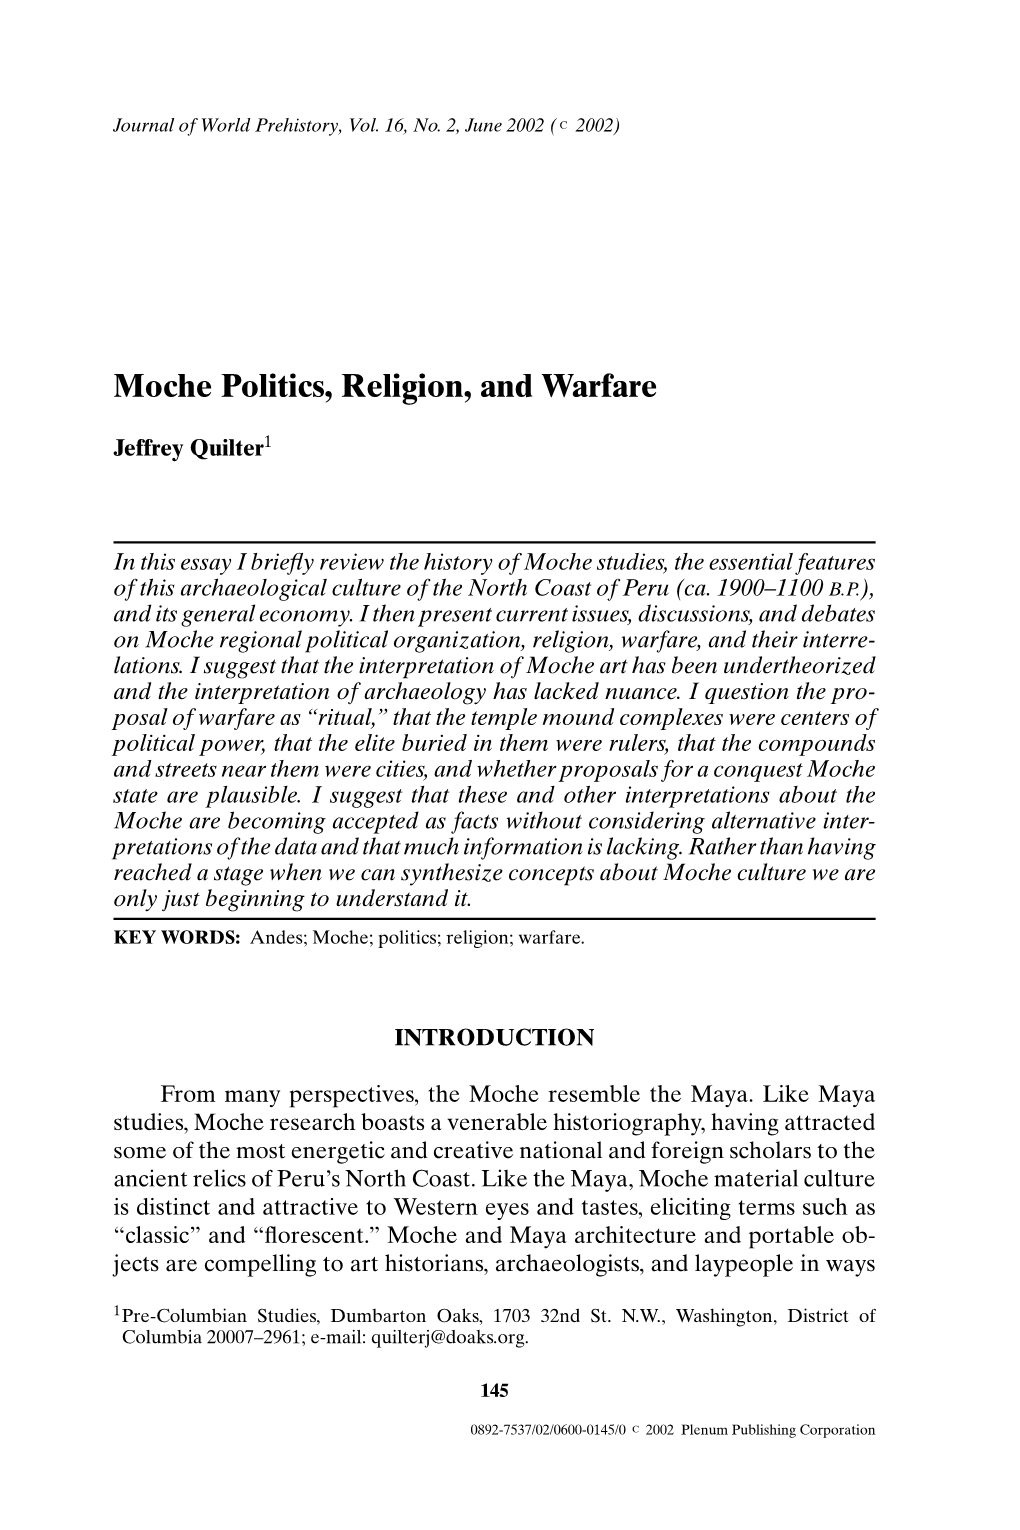 Moche Politics, Religion, and Warfare